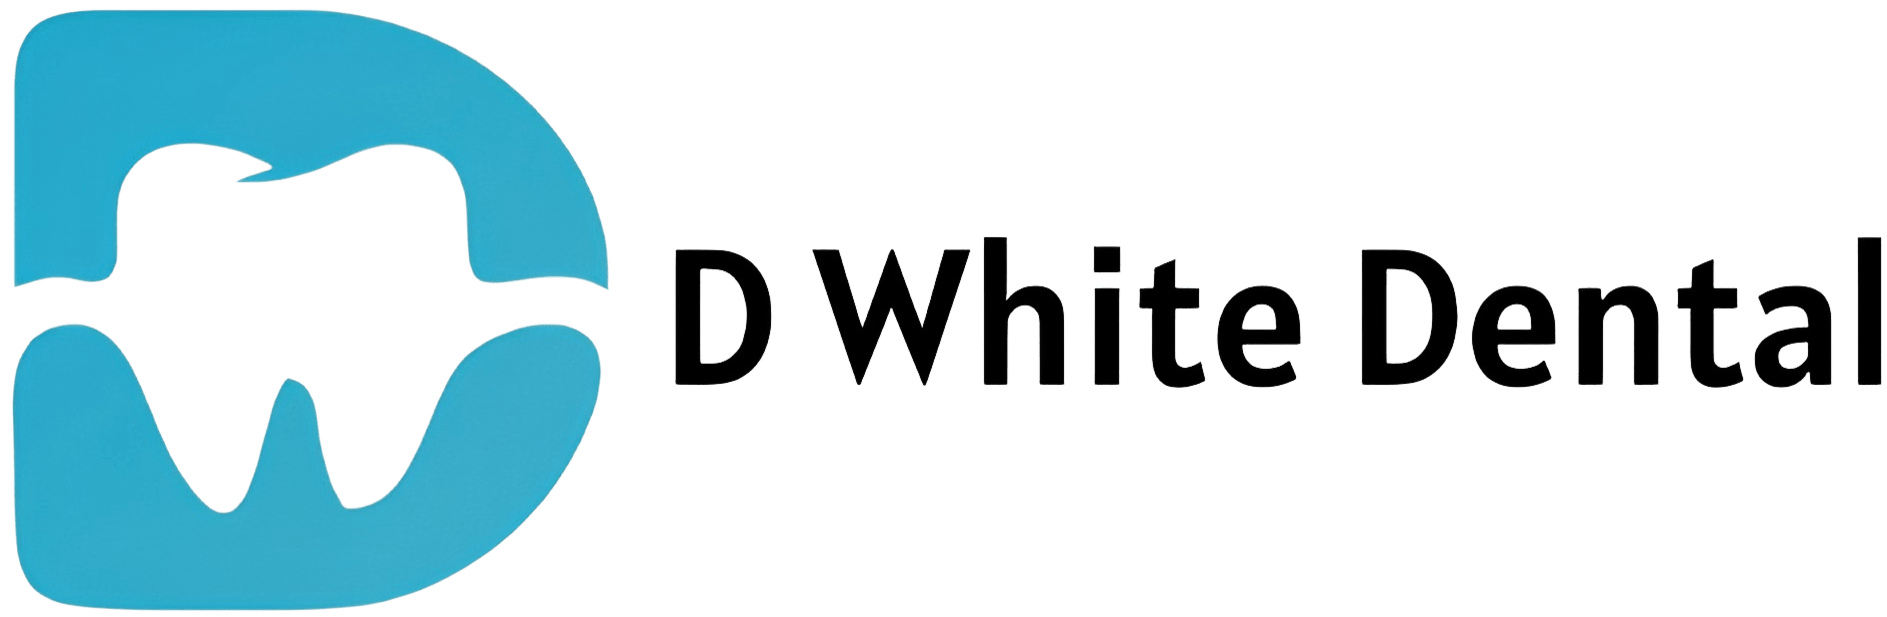 D White Dental